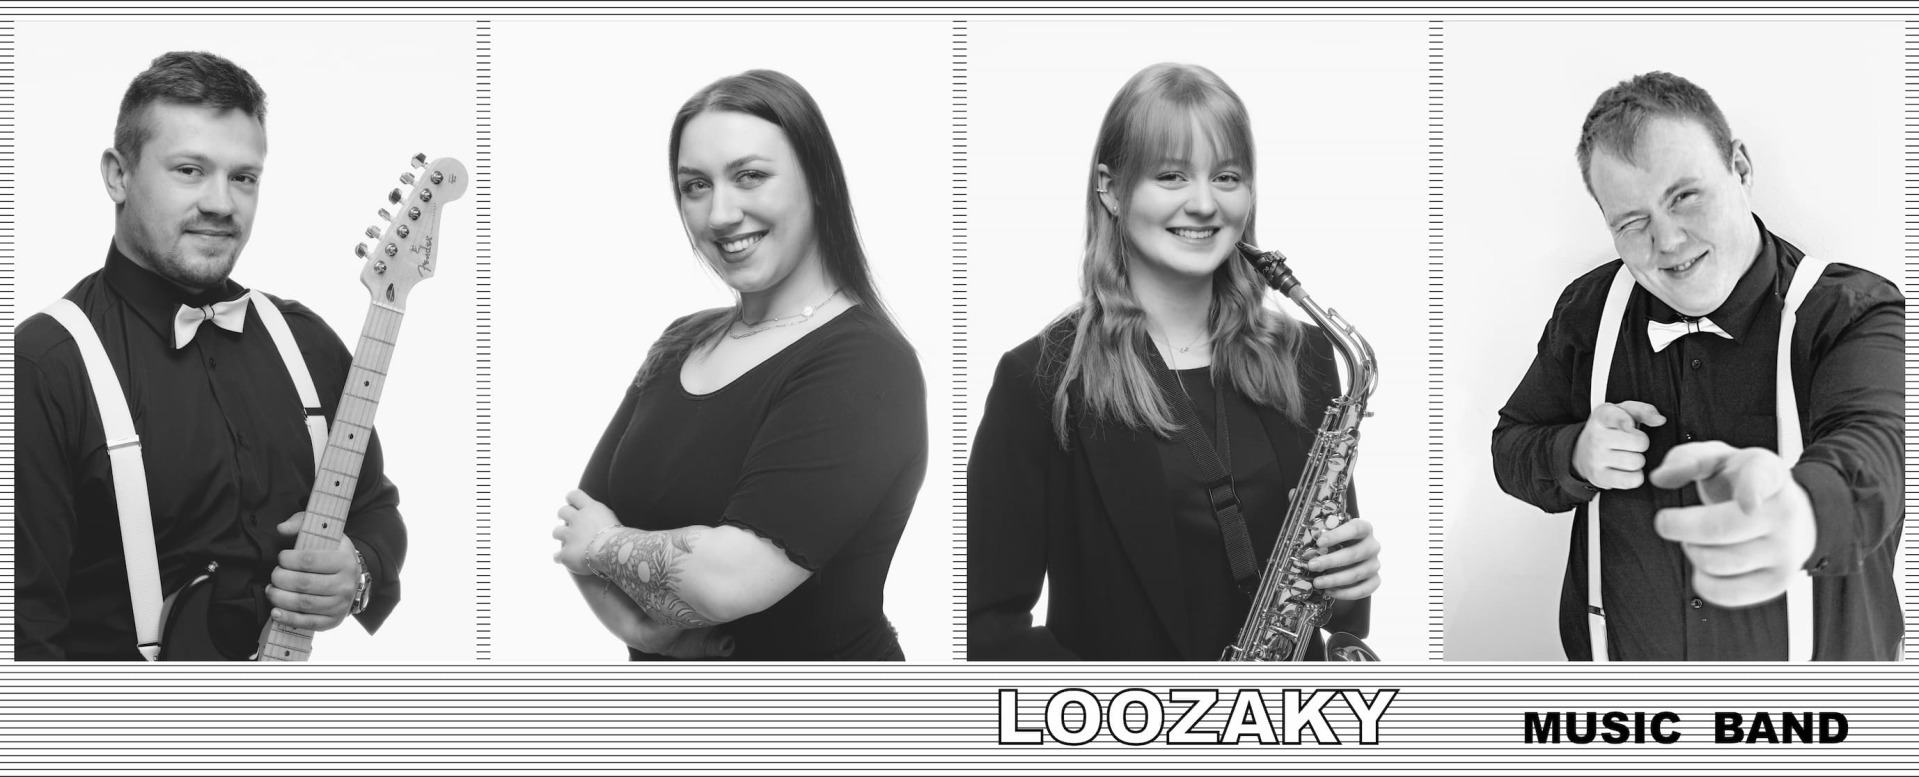 LOOZAKY Music Band | Zespół muzyczny Opole, opolskie - cover